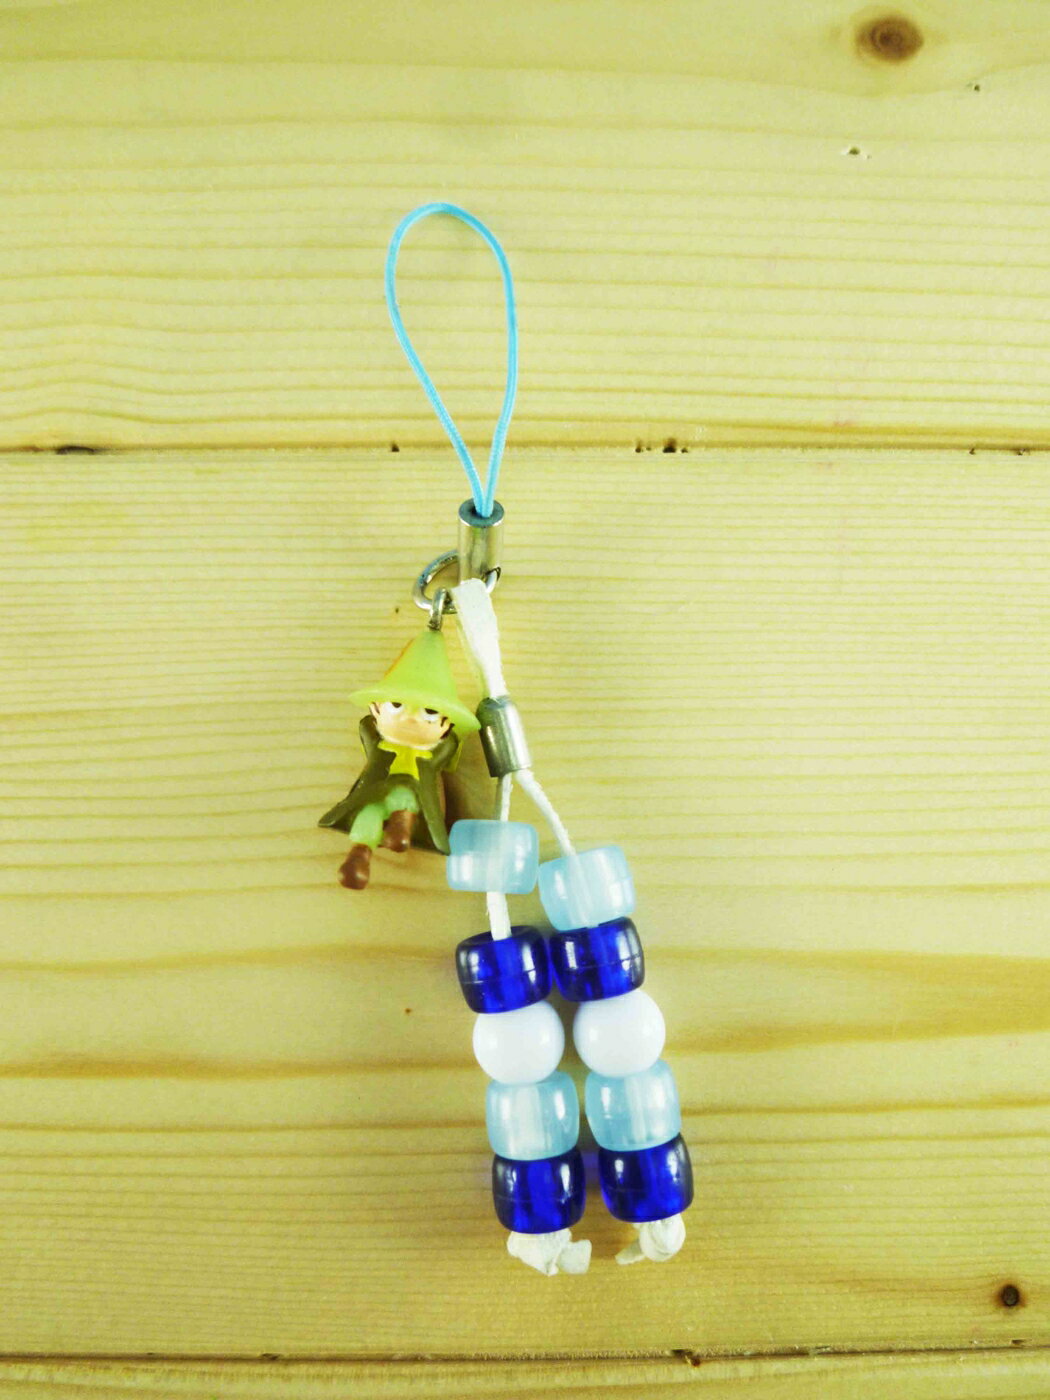 【震撼精品百貨】慕敏嚕嚕米家族 Moomin Valley 手機吊飾-藍珠阿金 震撼日式精品百貨